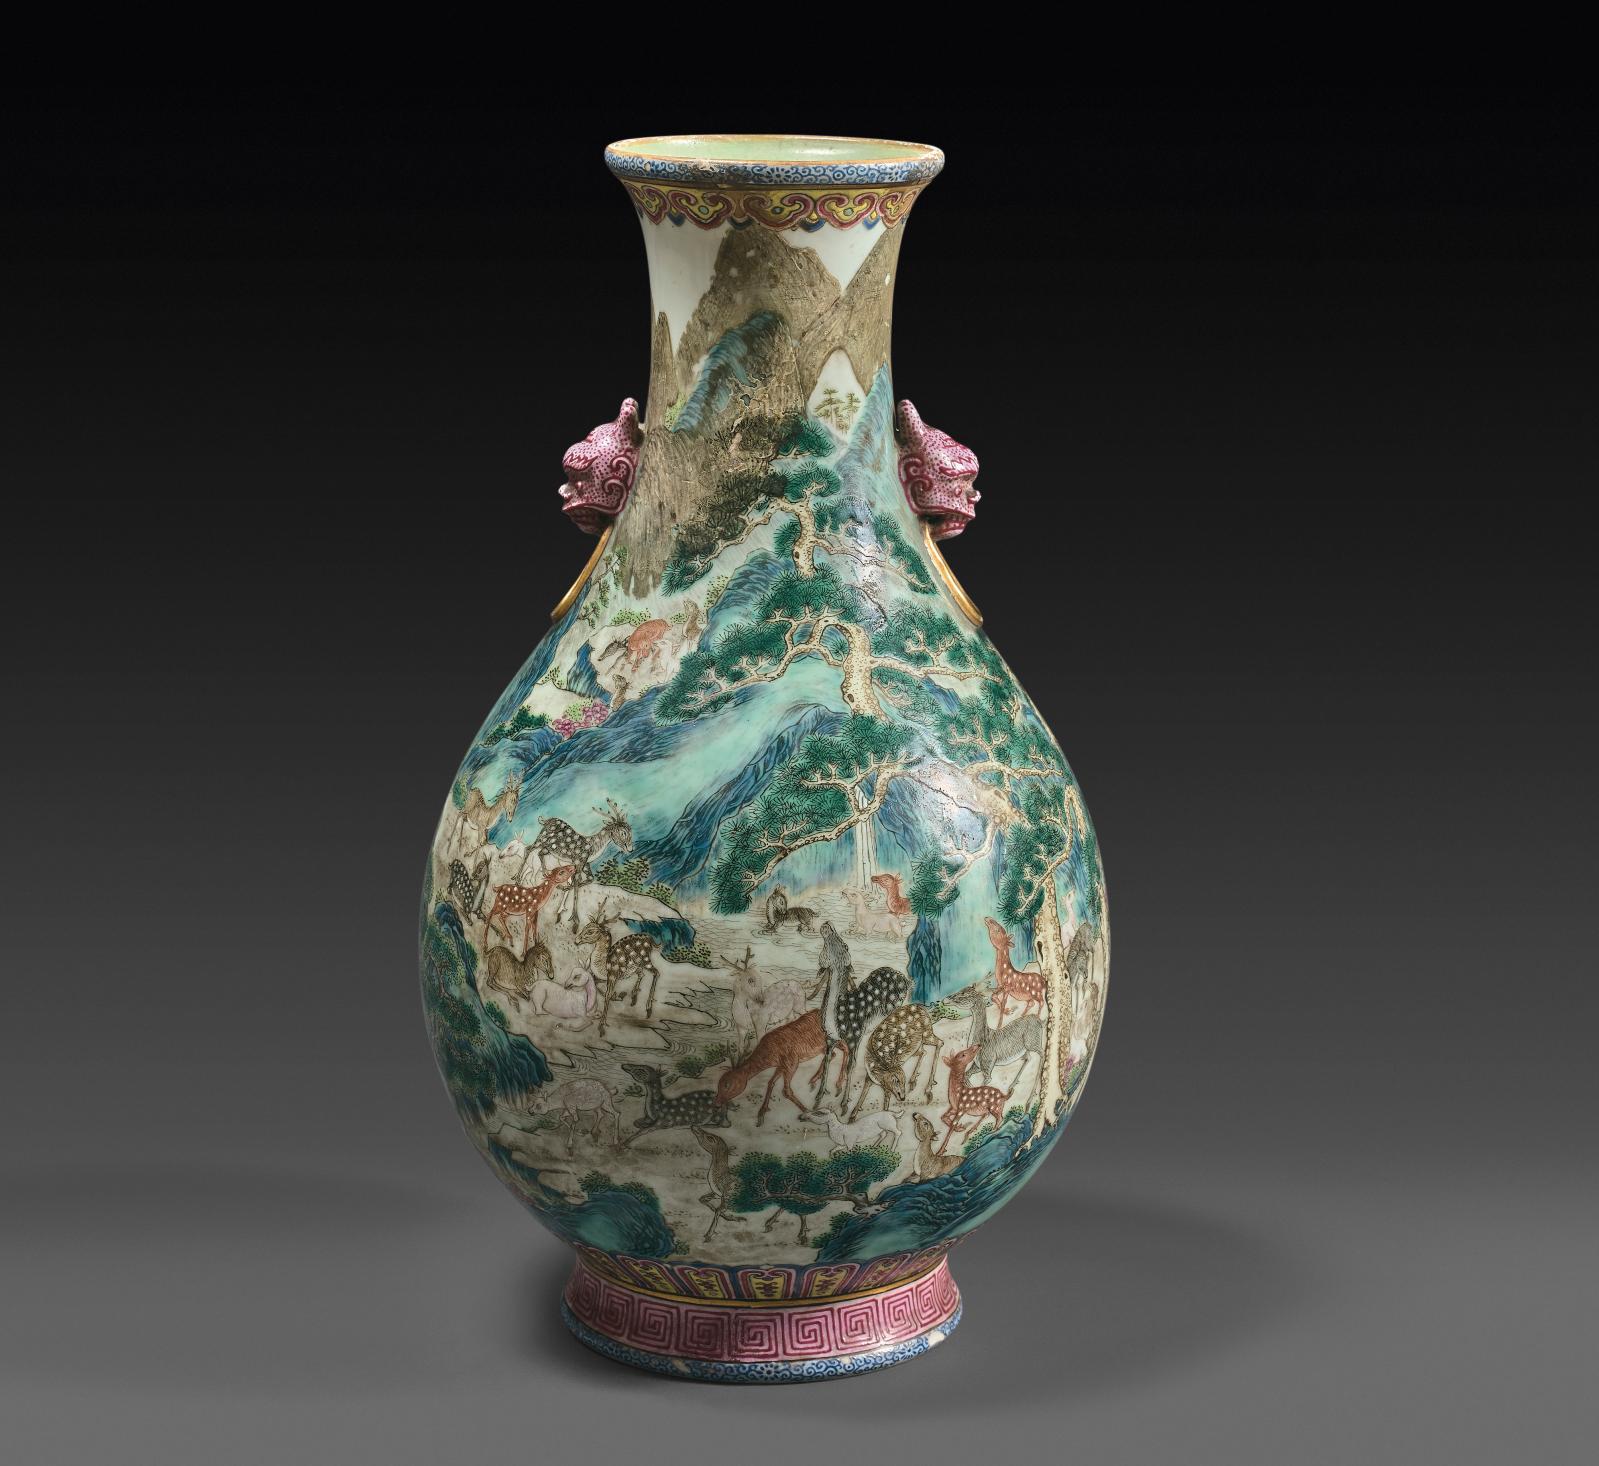 Van Dongen et un vase chinois aux cent daims